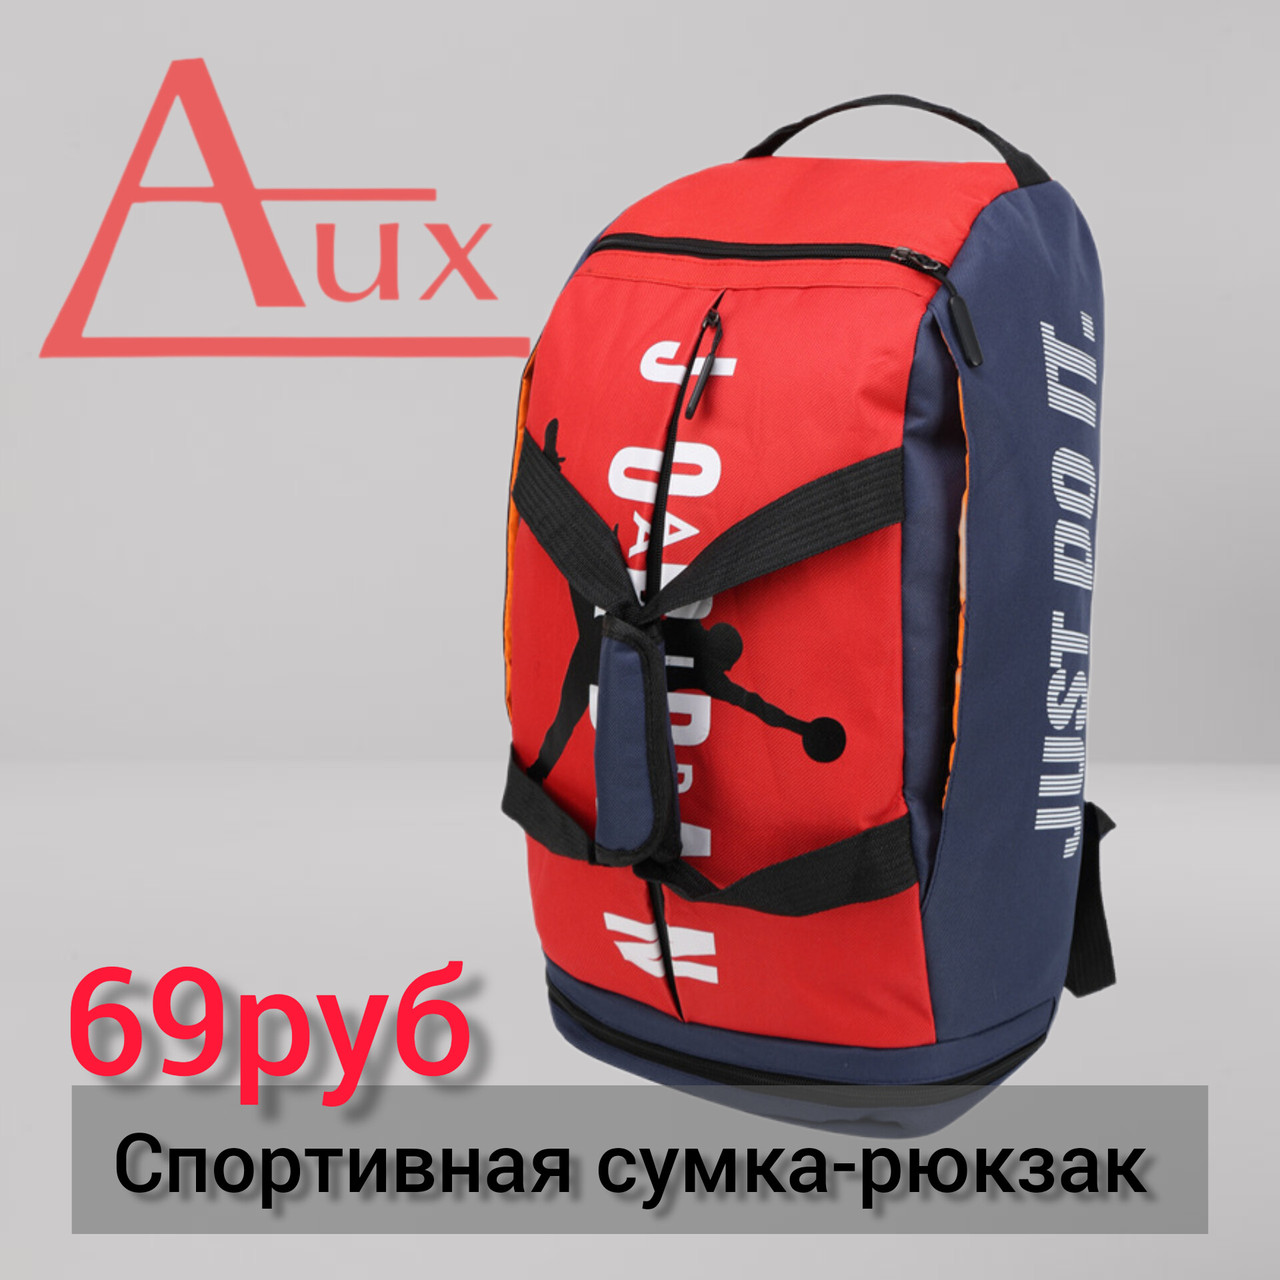 Спортивная Сумка-рюкзак (красный)